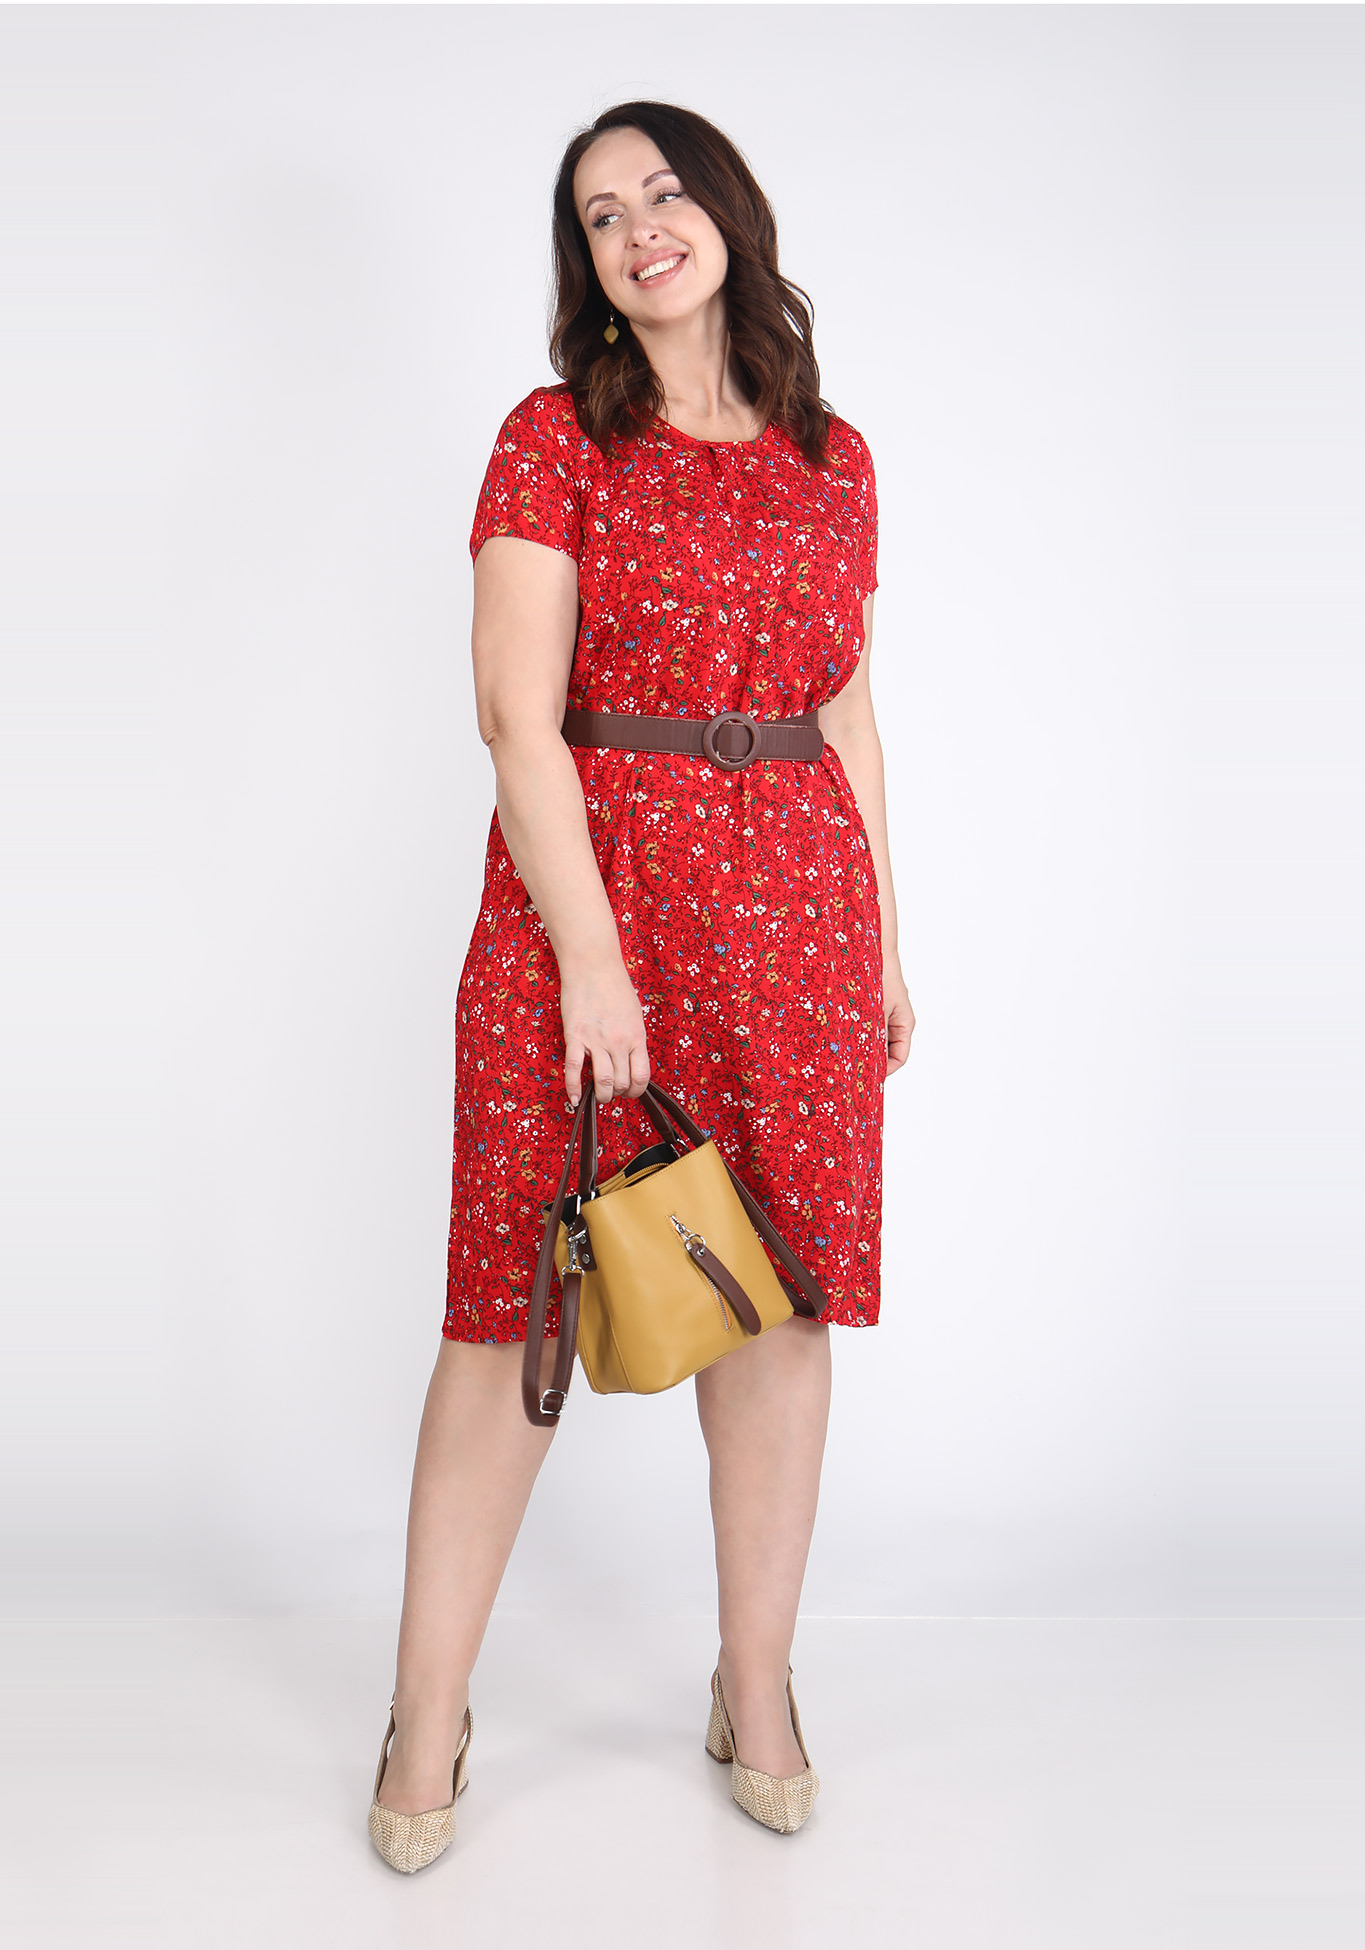 Платье "Солнечное приветствие" Likes, размер 52, цвет красный - фото 2